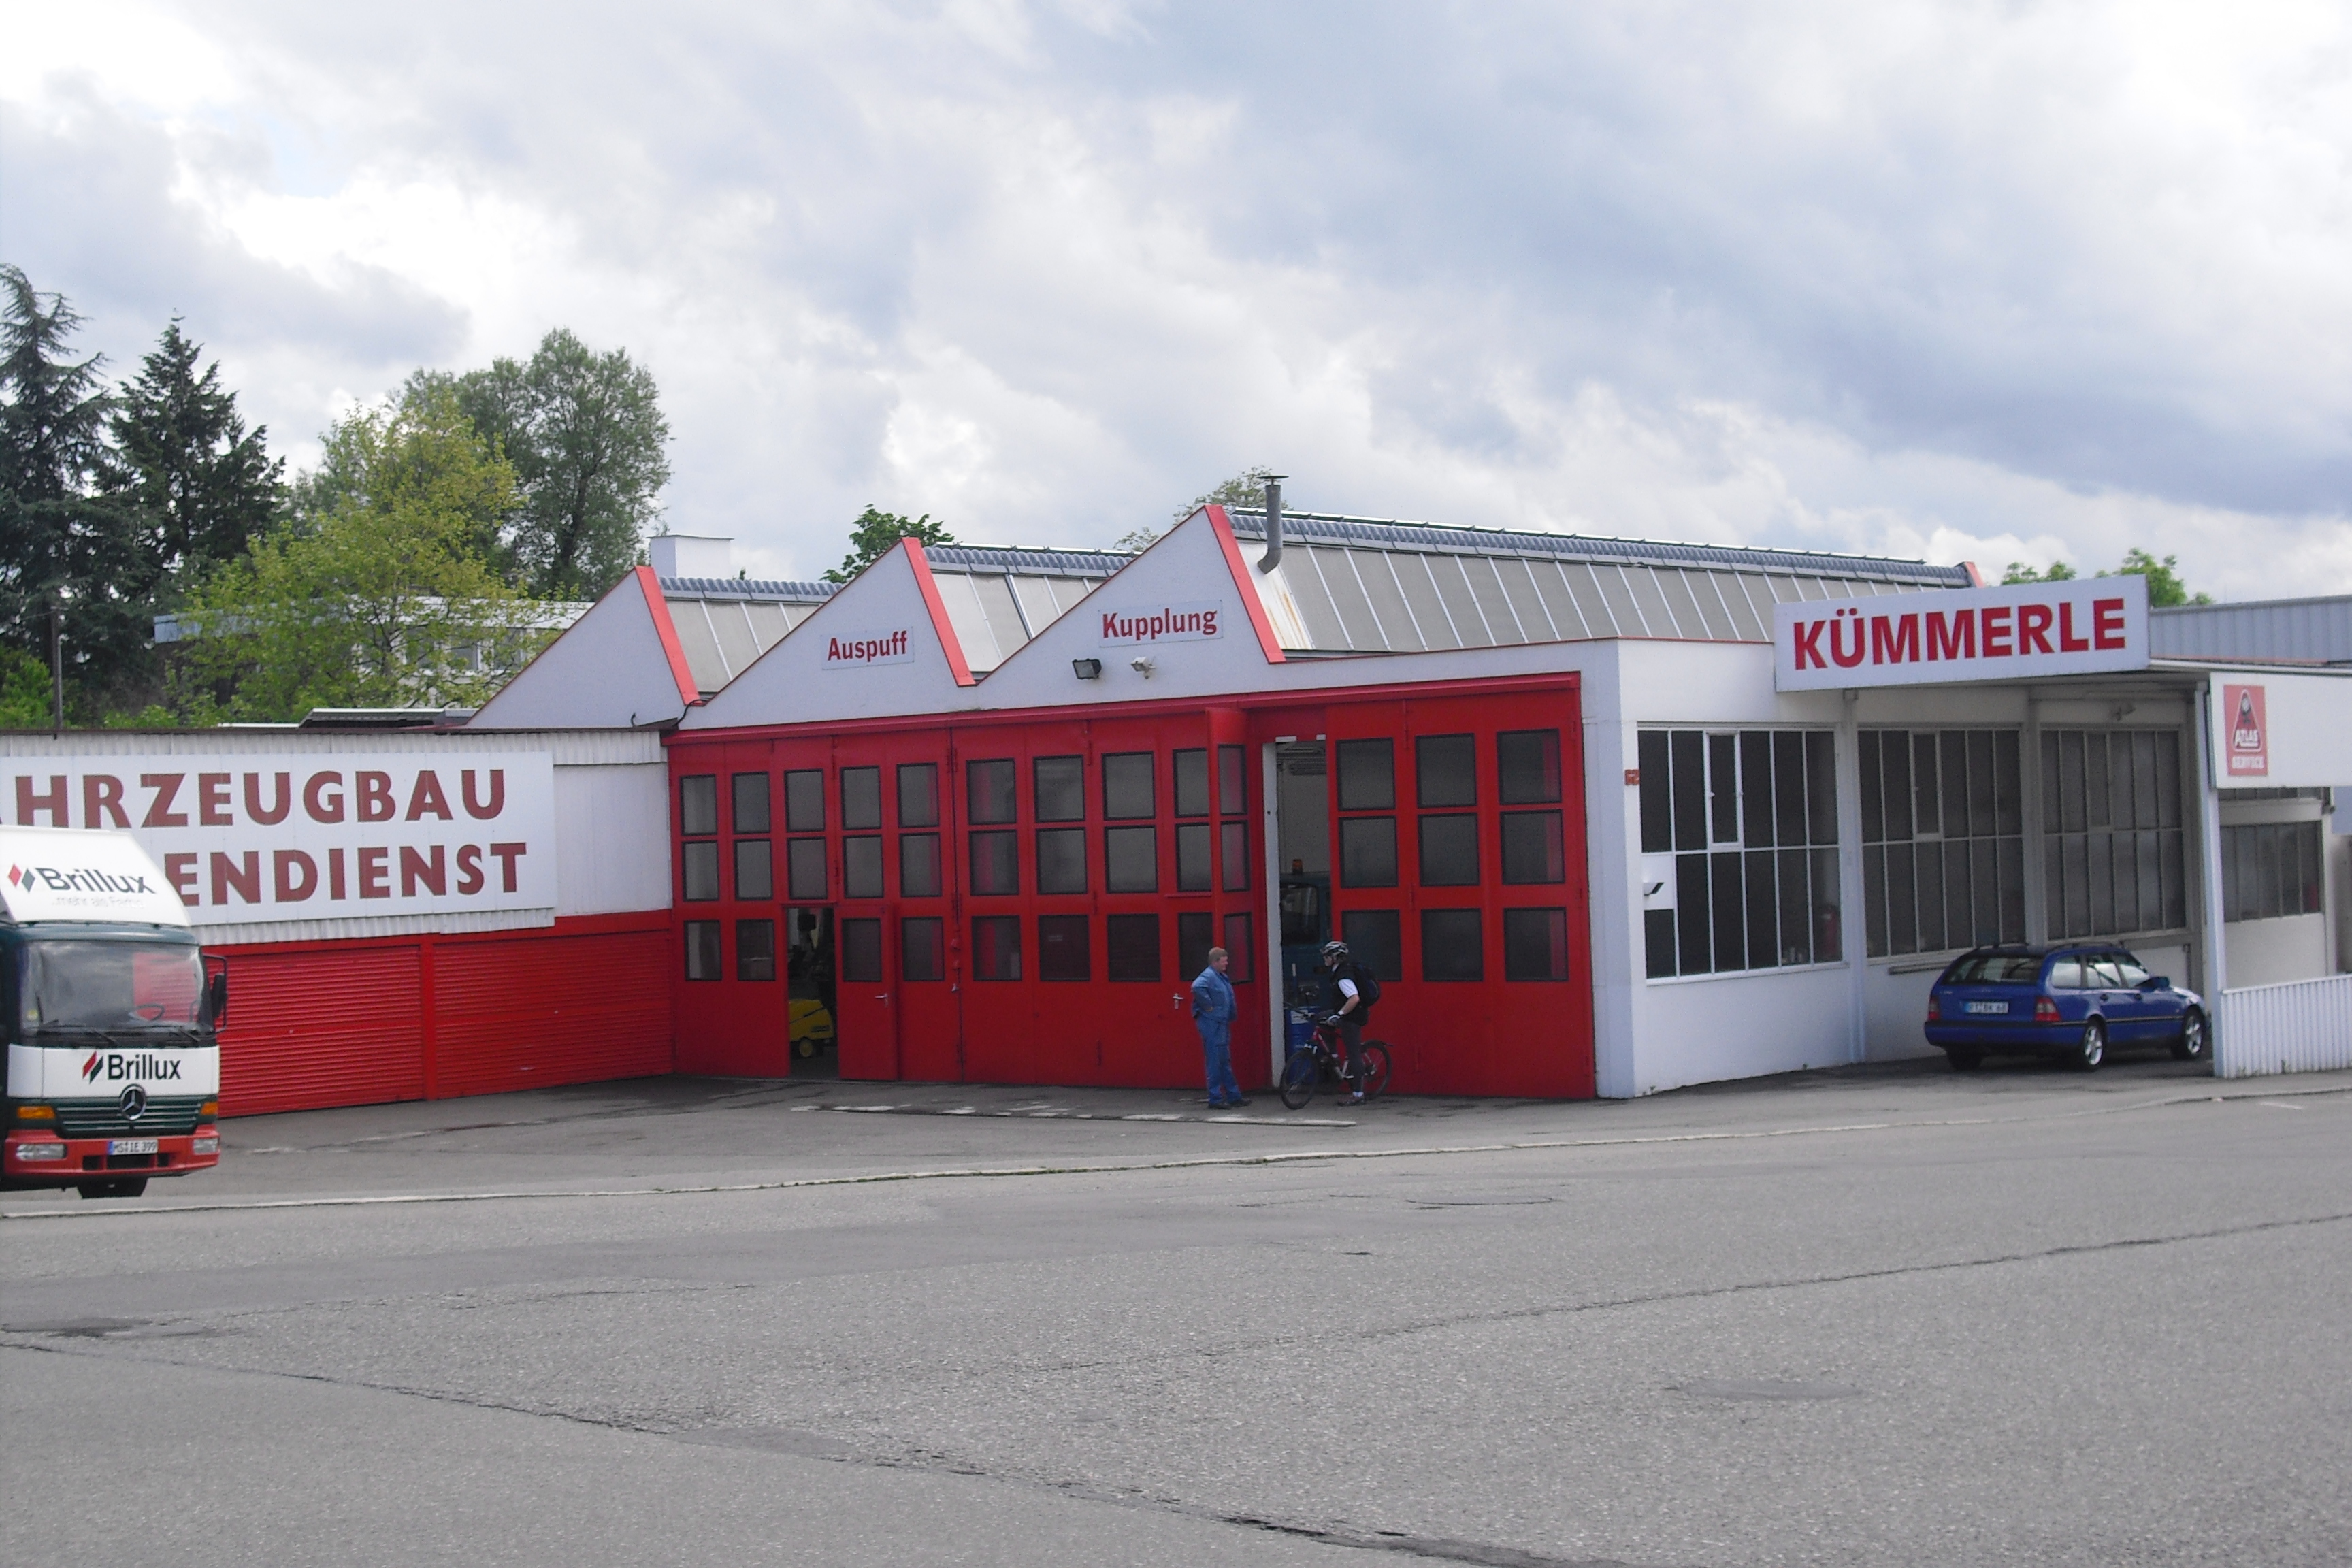 Bild 1 Kümmerle GmbH, Hermann in Reutlingen